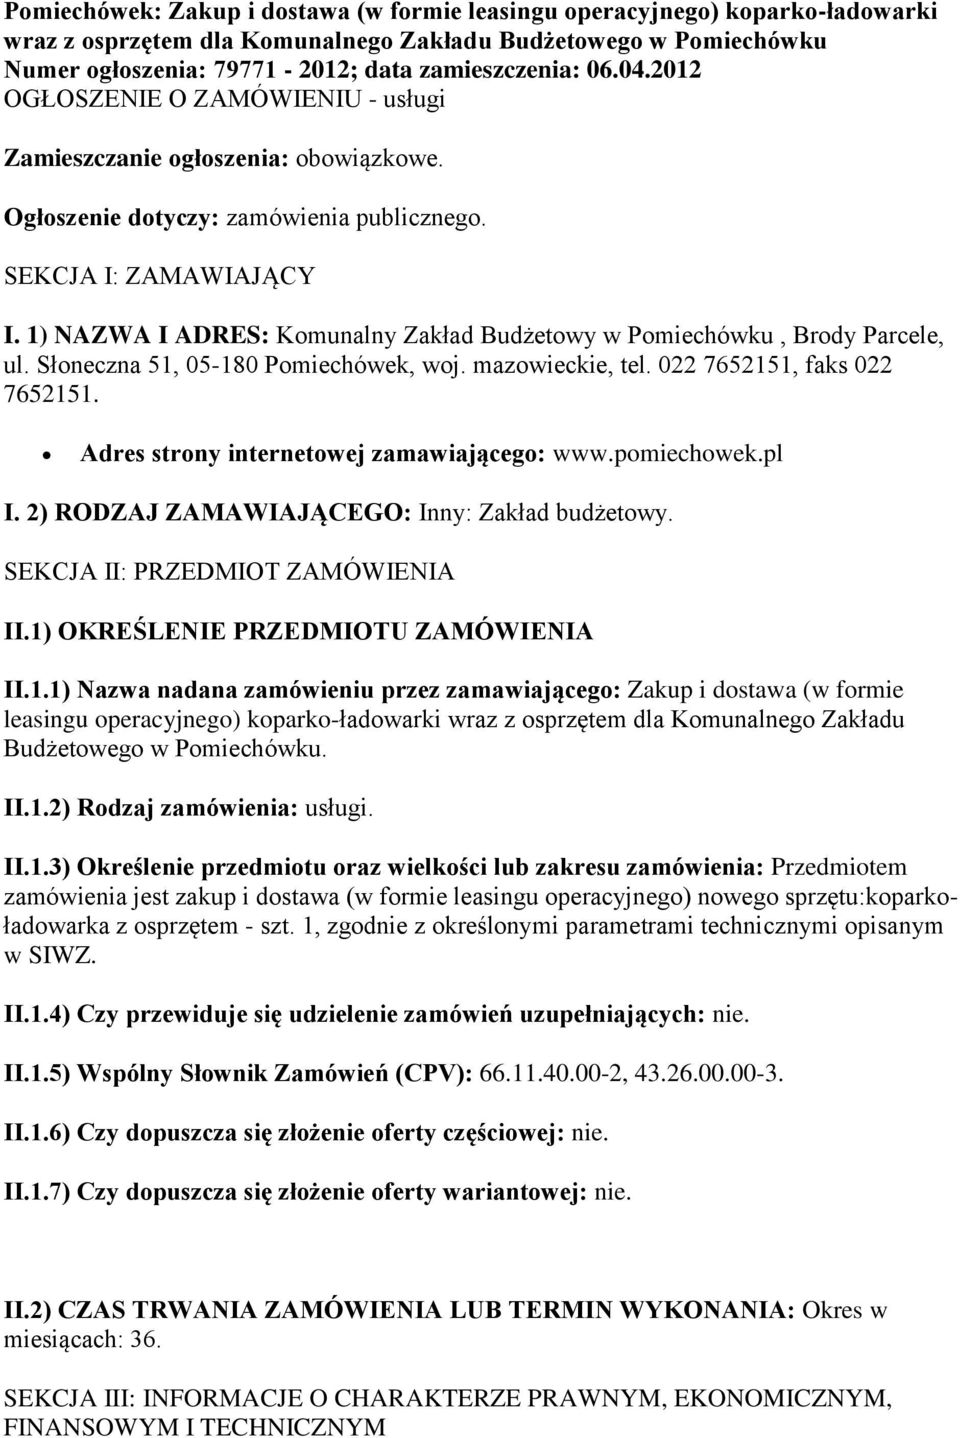 1) NAZWA I ADRES: Komunalny Zakład Budżetowy w Pomiechówku, Brody Parcele, ul. Słoneczna 51, 05-180 Pomiechówek, woj. mazowieckie, tel. 022 7652151, faks 022 7652151.